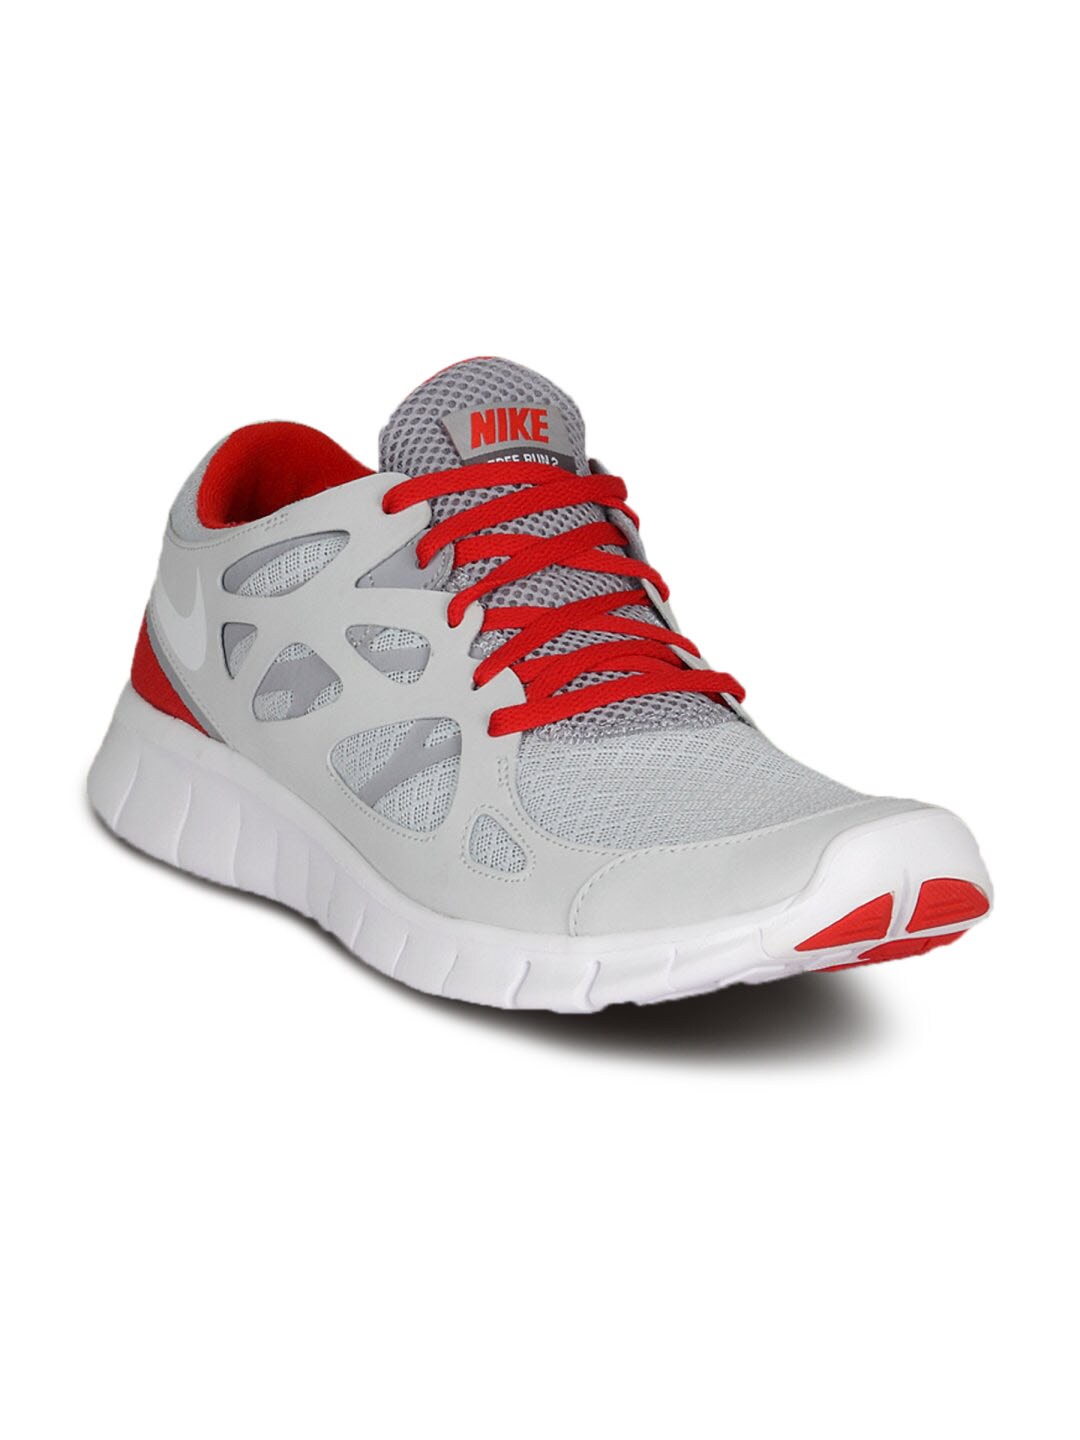 Nike Men's Free Run Grey Red White Shoe